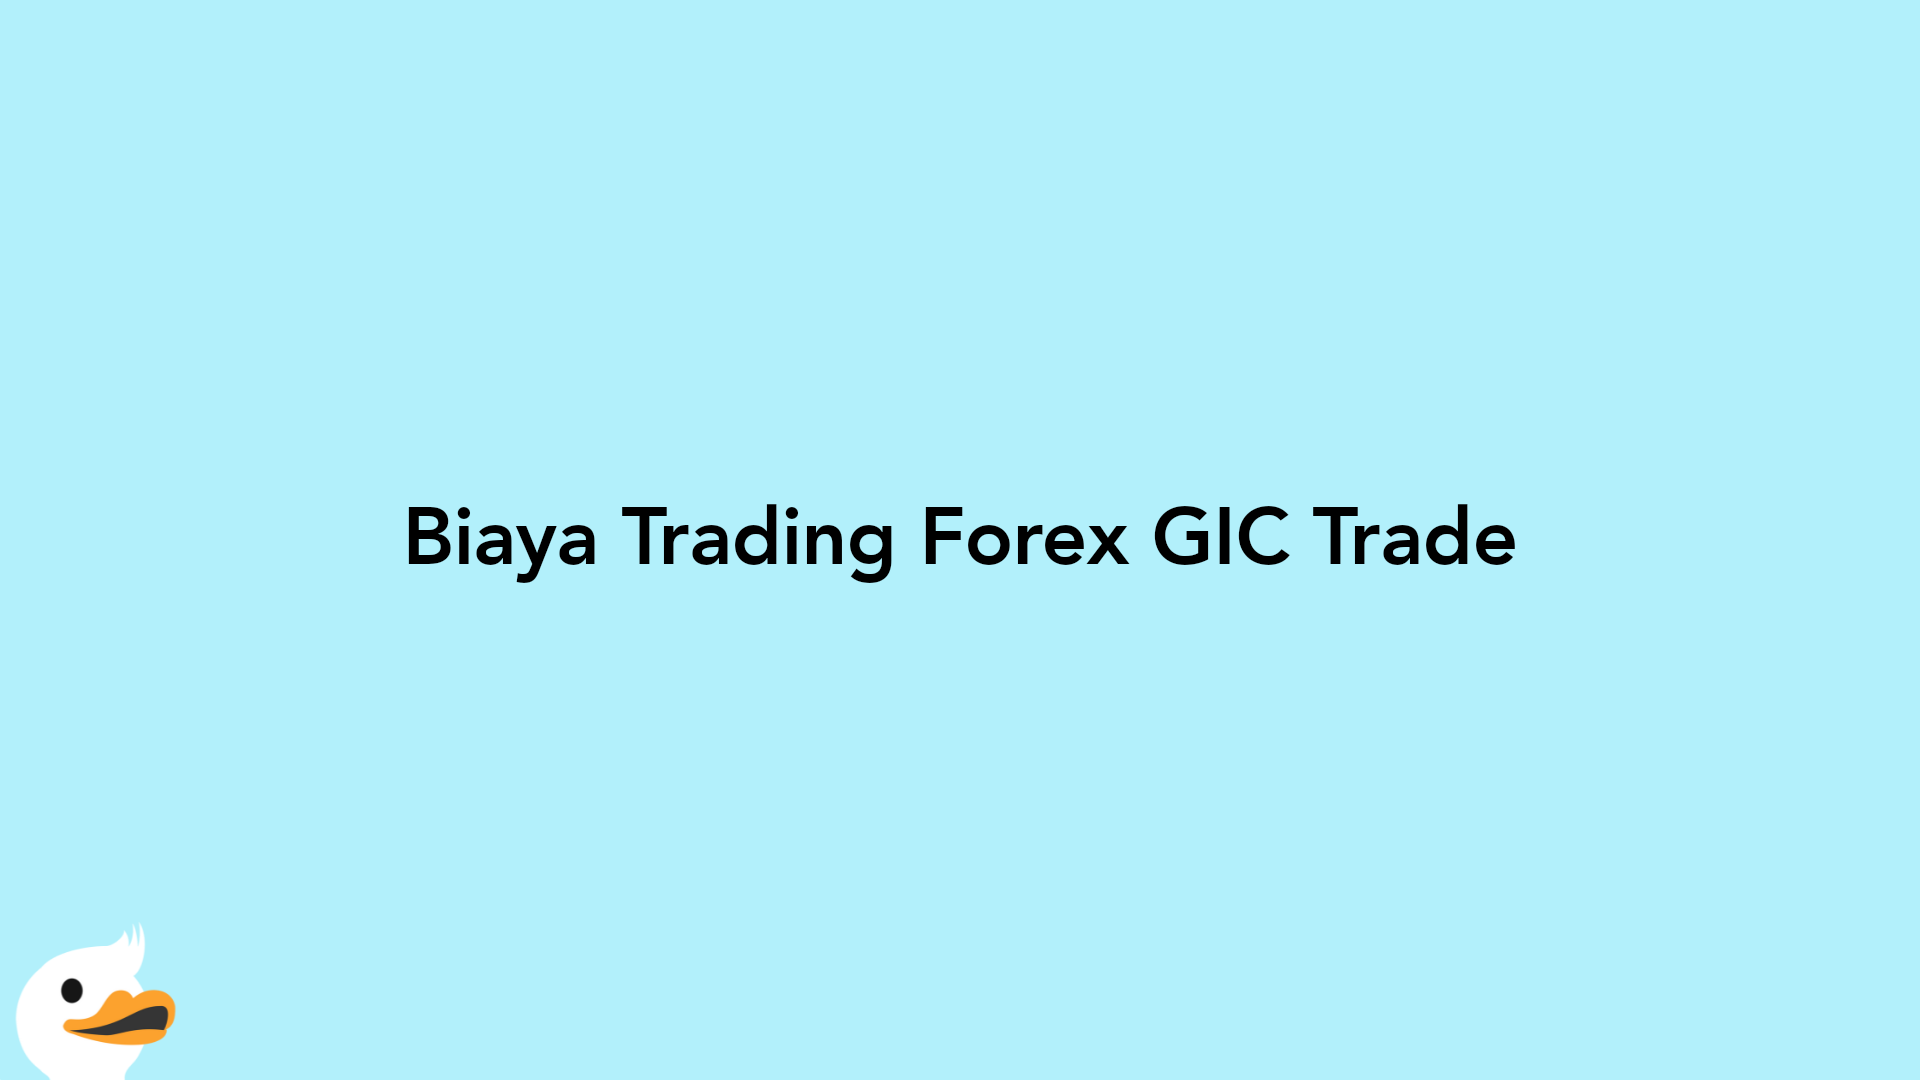 Biaya Trading Forex GIC Trade